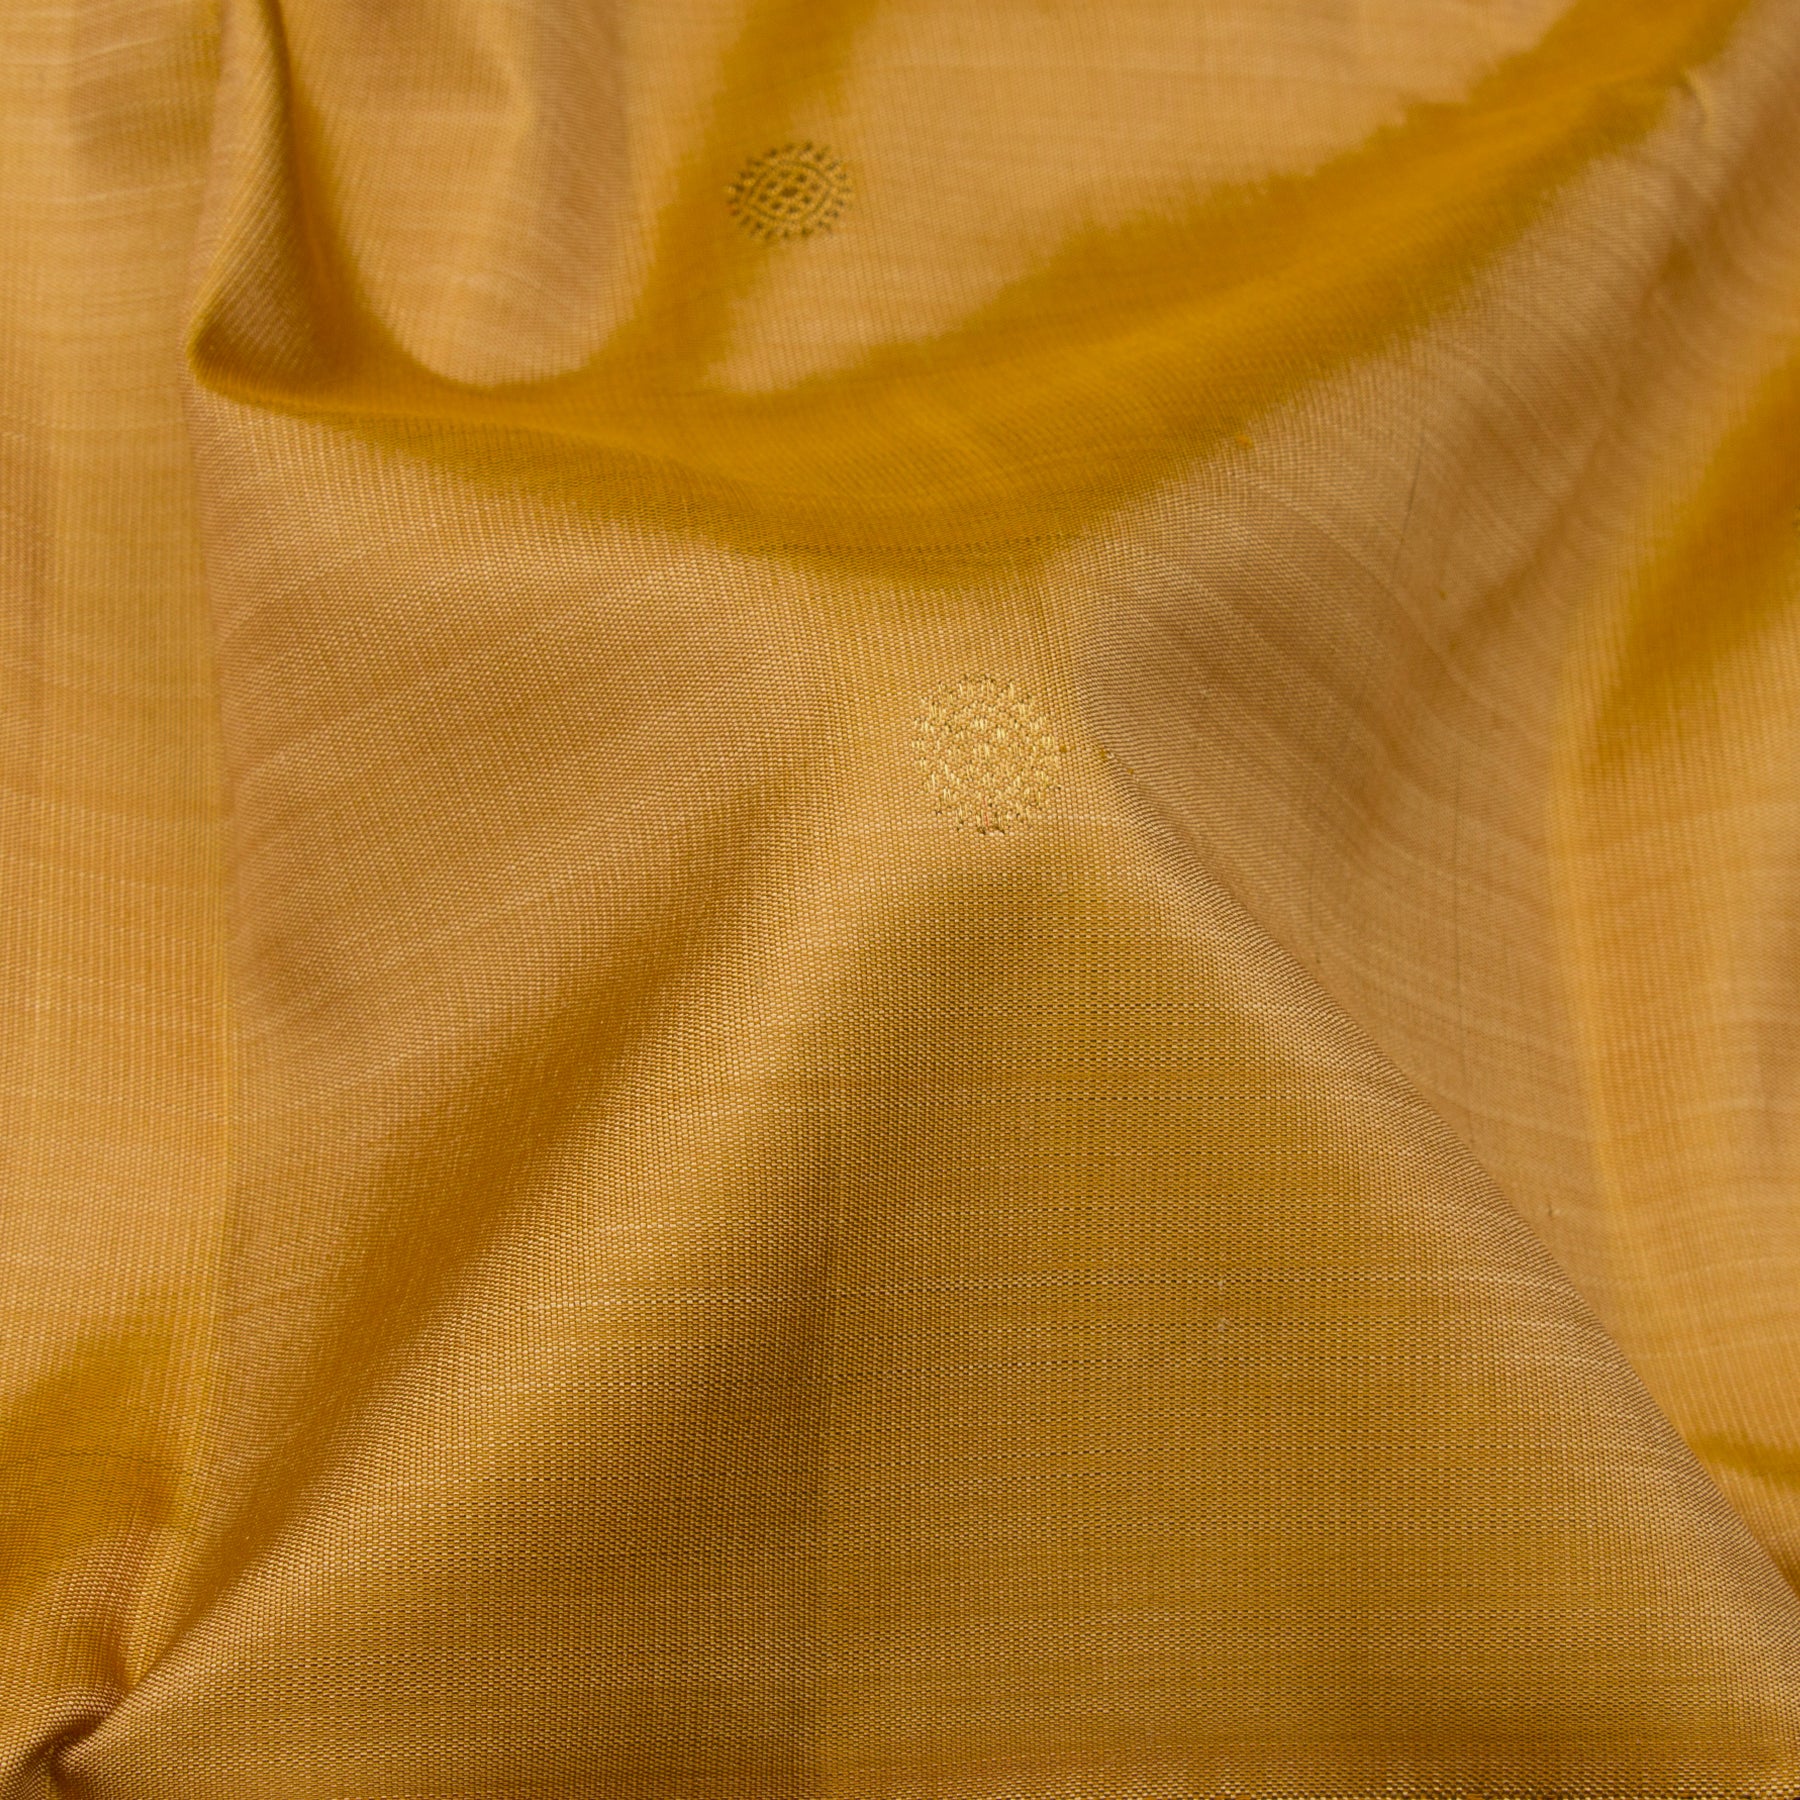 Kanakavalli Kanjivaram Silk Sari 23-110-HS001-13124 - Fabric View